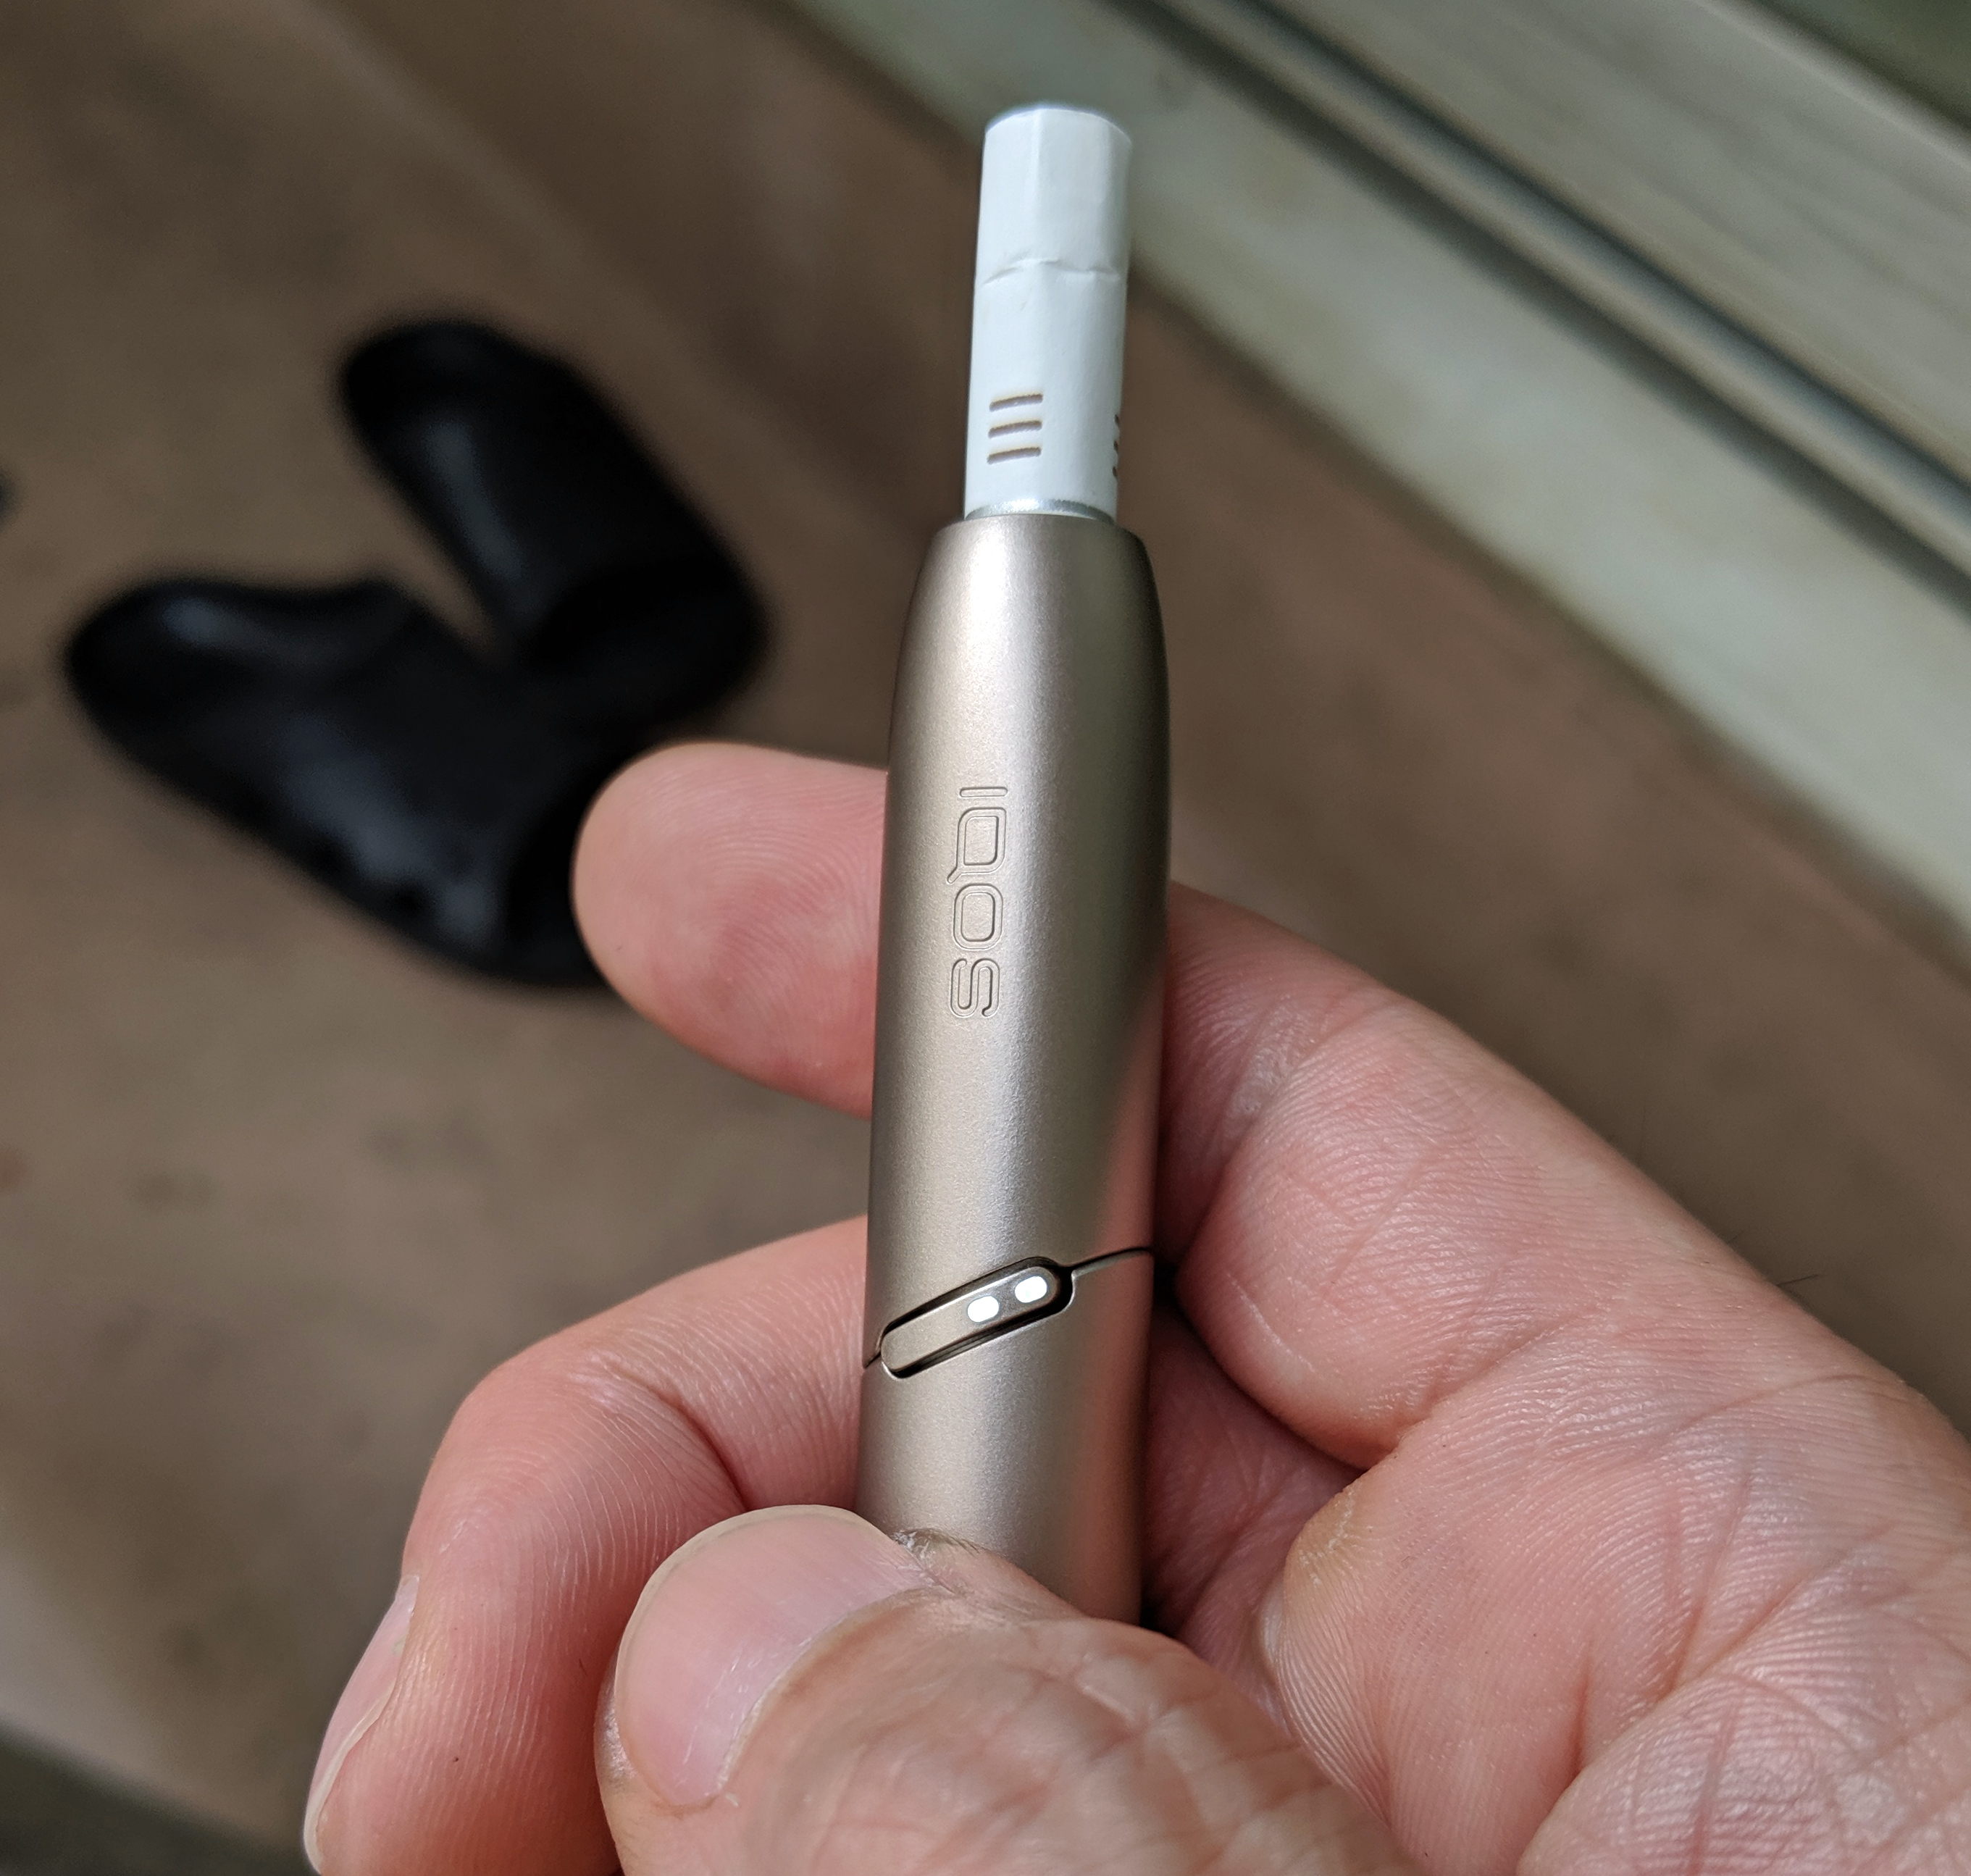 【たばこニュース】突然アイコスの新モデル「デュオ（iQOS3 DUO）」発売開始！ ホルダー満充電で連続2本吸えるぞ～ッ!! | ロケットニュース24